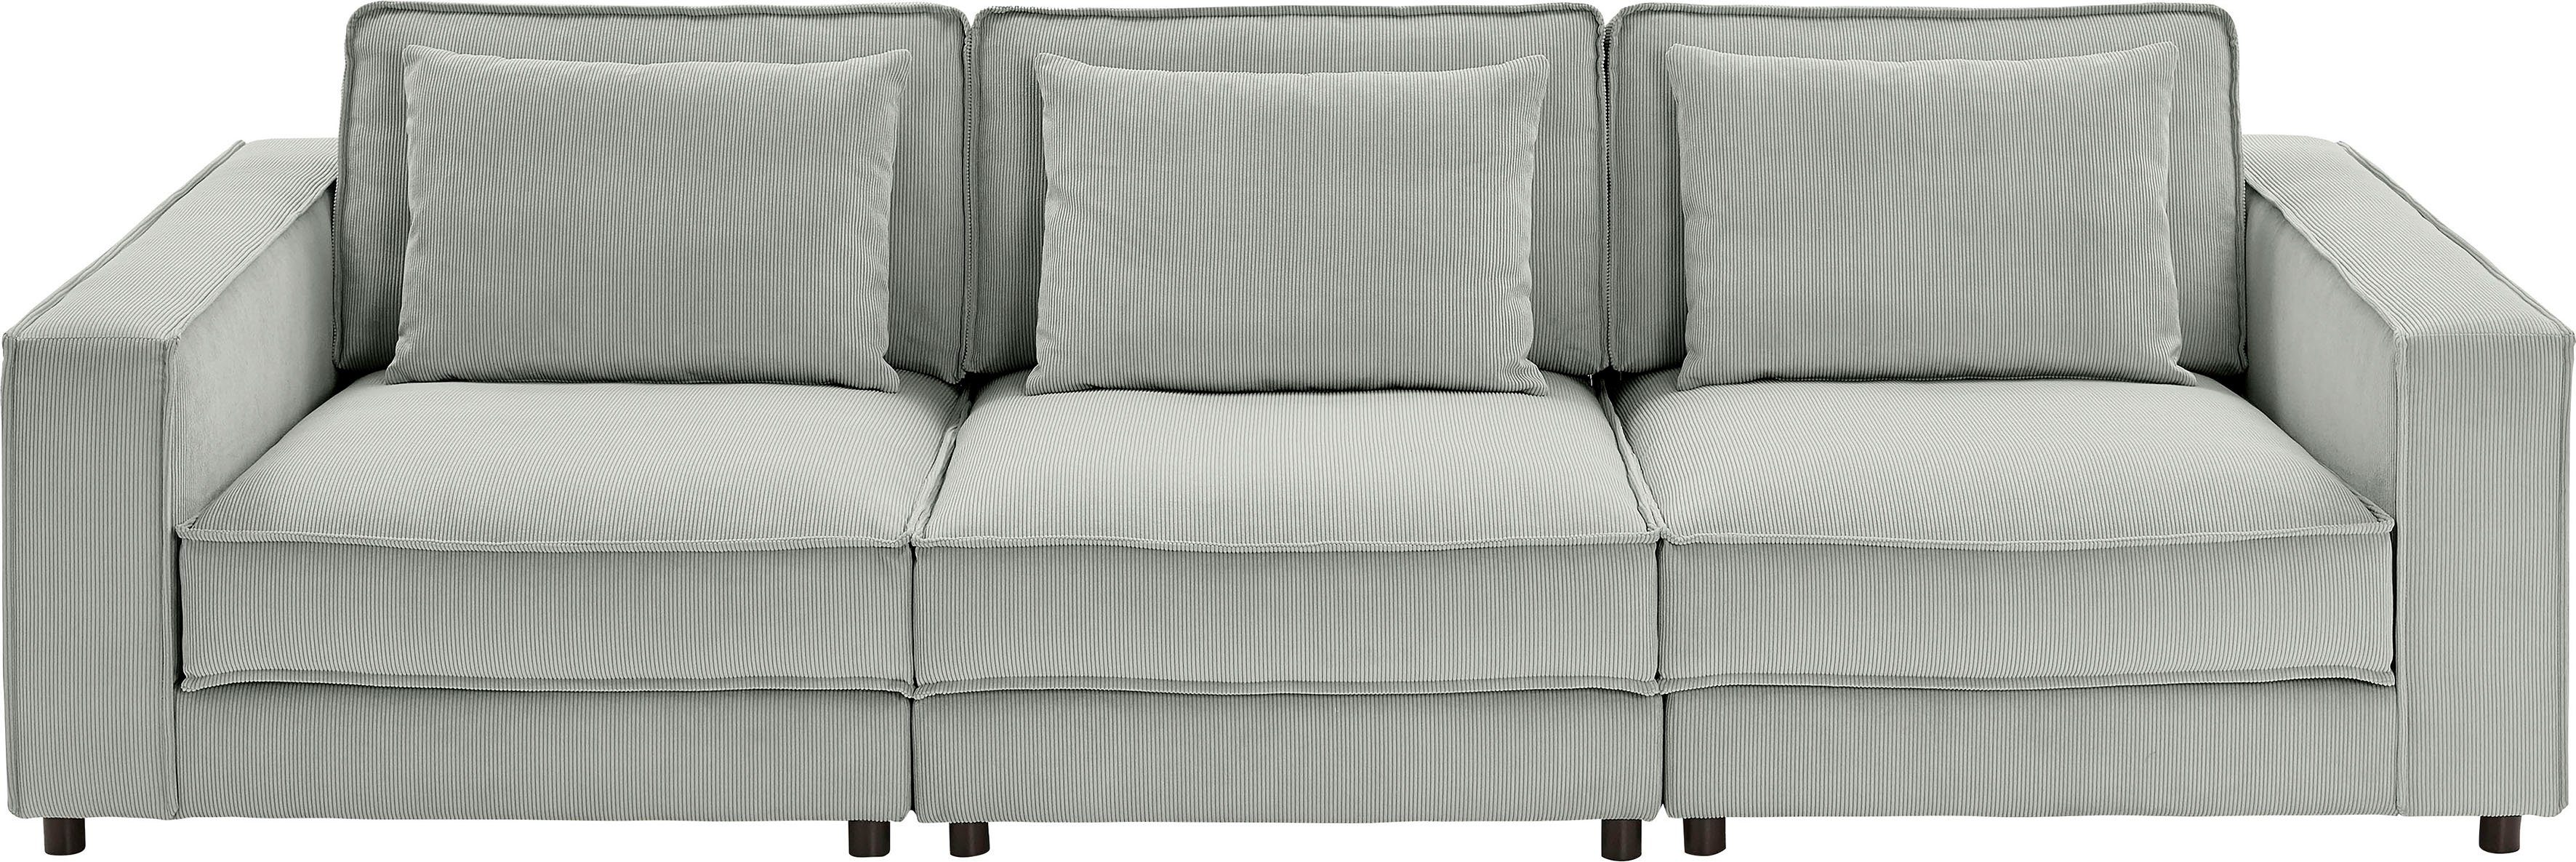 ATLANTIC home collection 3-Sitzer Valan, frei grau XXL-Sitzfläche, mit Cord-Bezug, mit stellbar, Wellenunterfederung